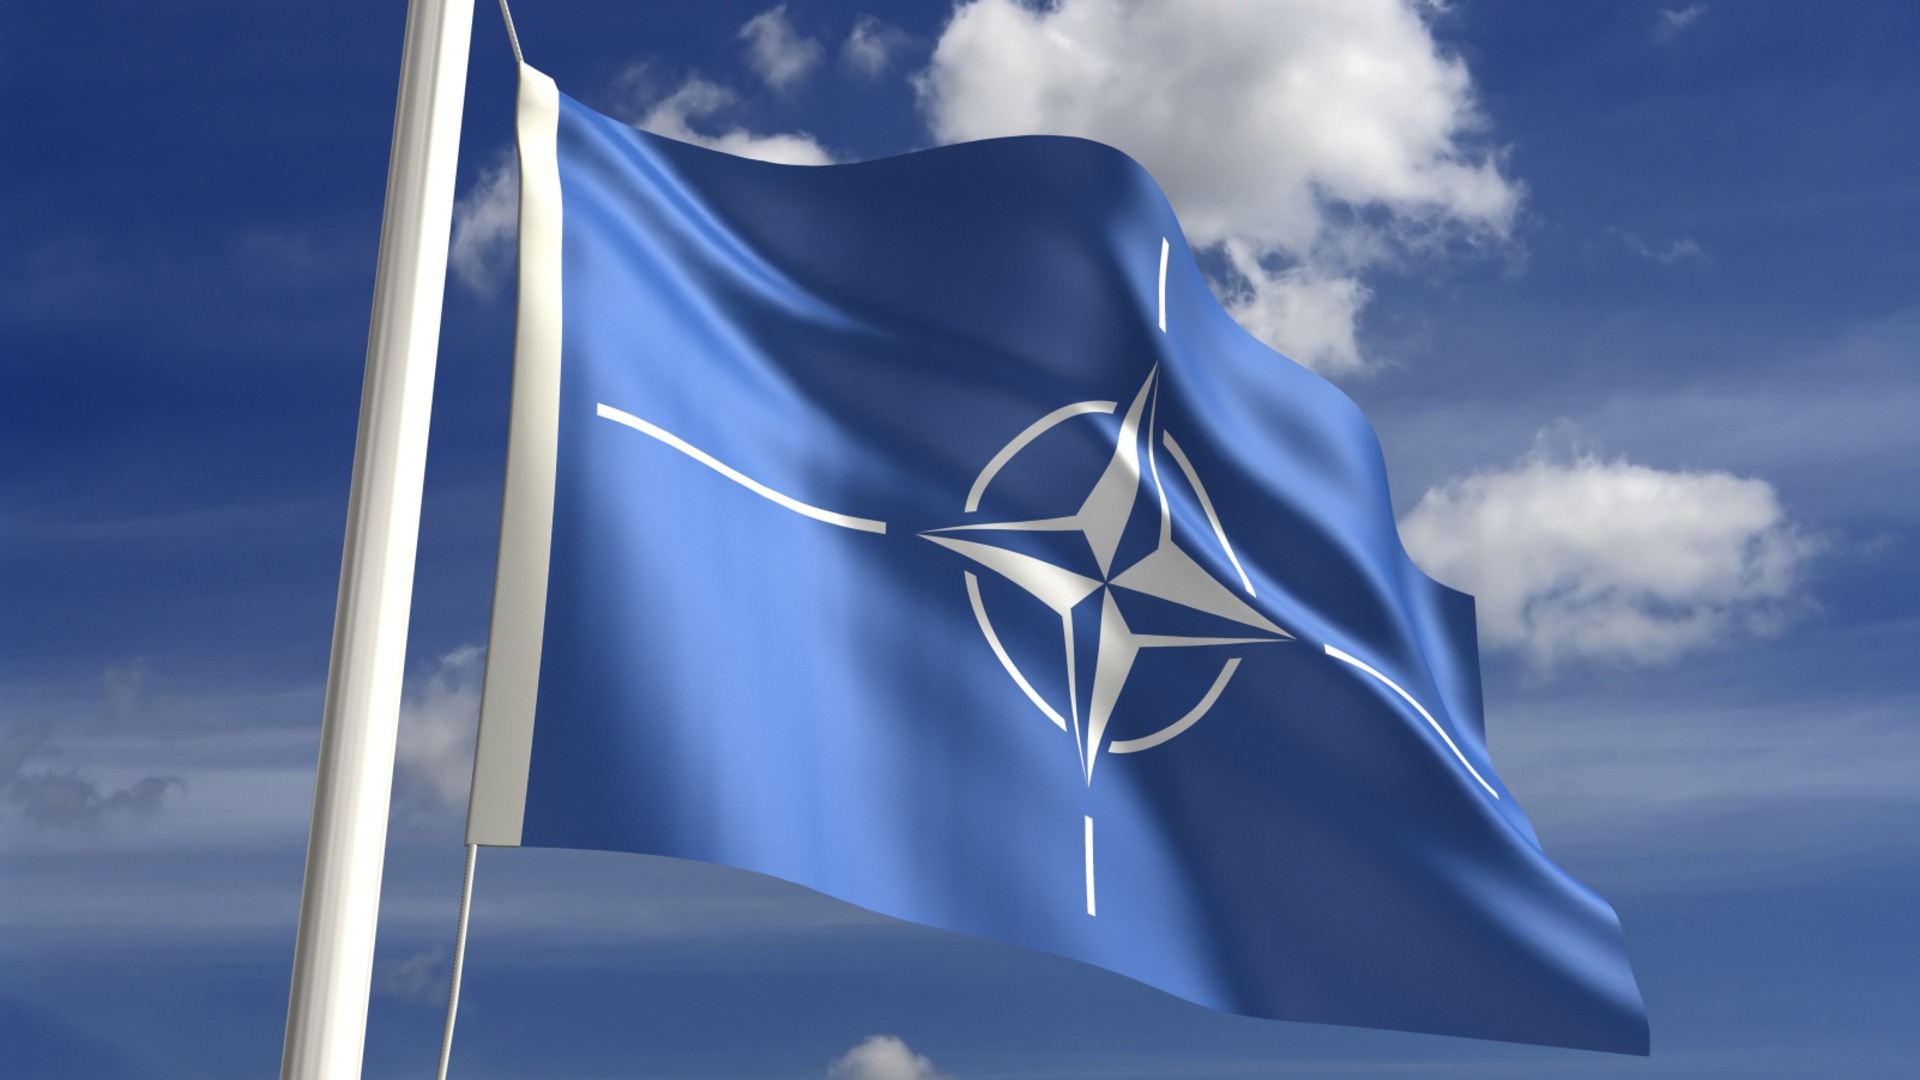 Natoflaggan vajar mot en blå himmel.